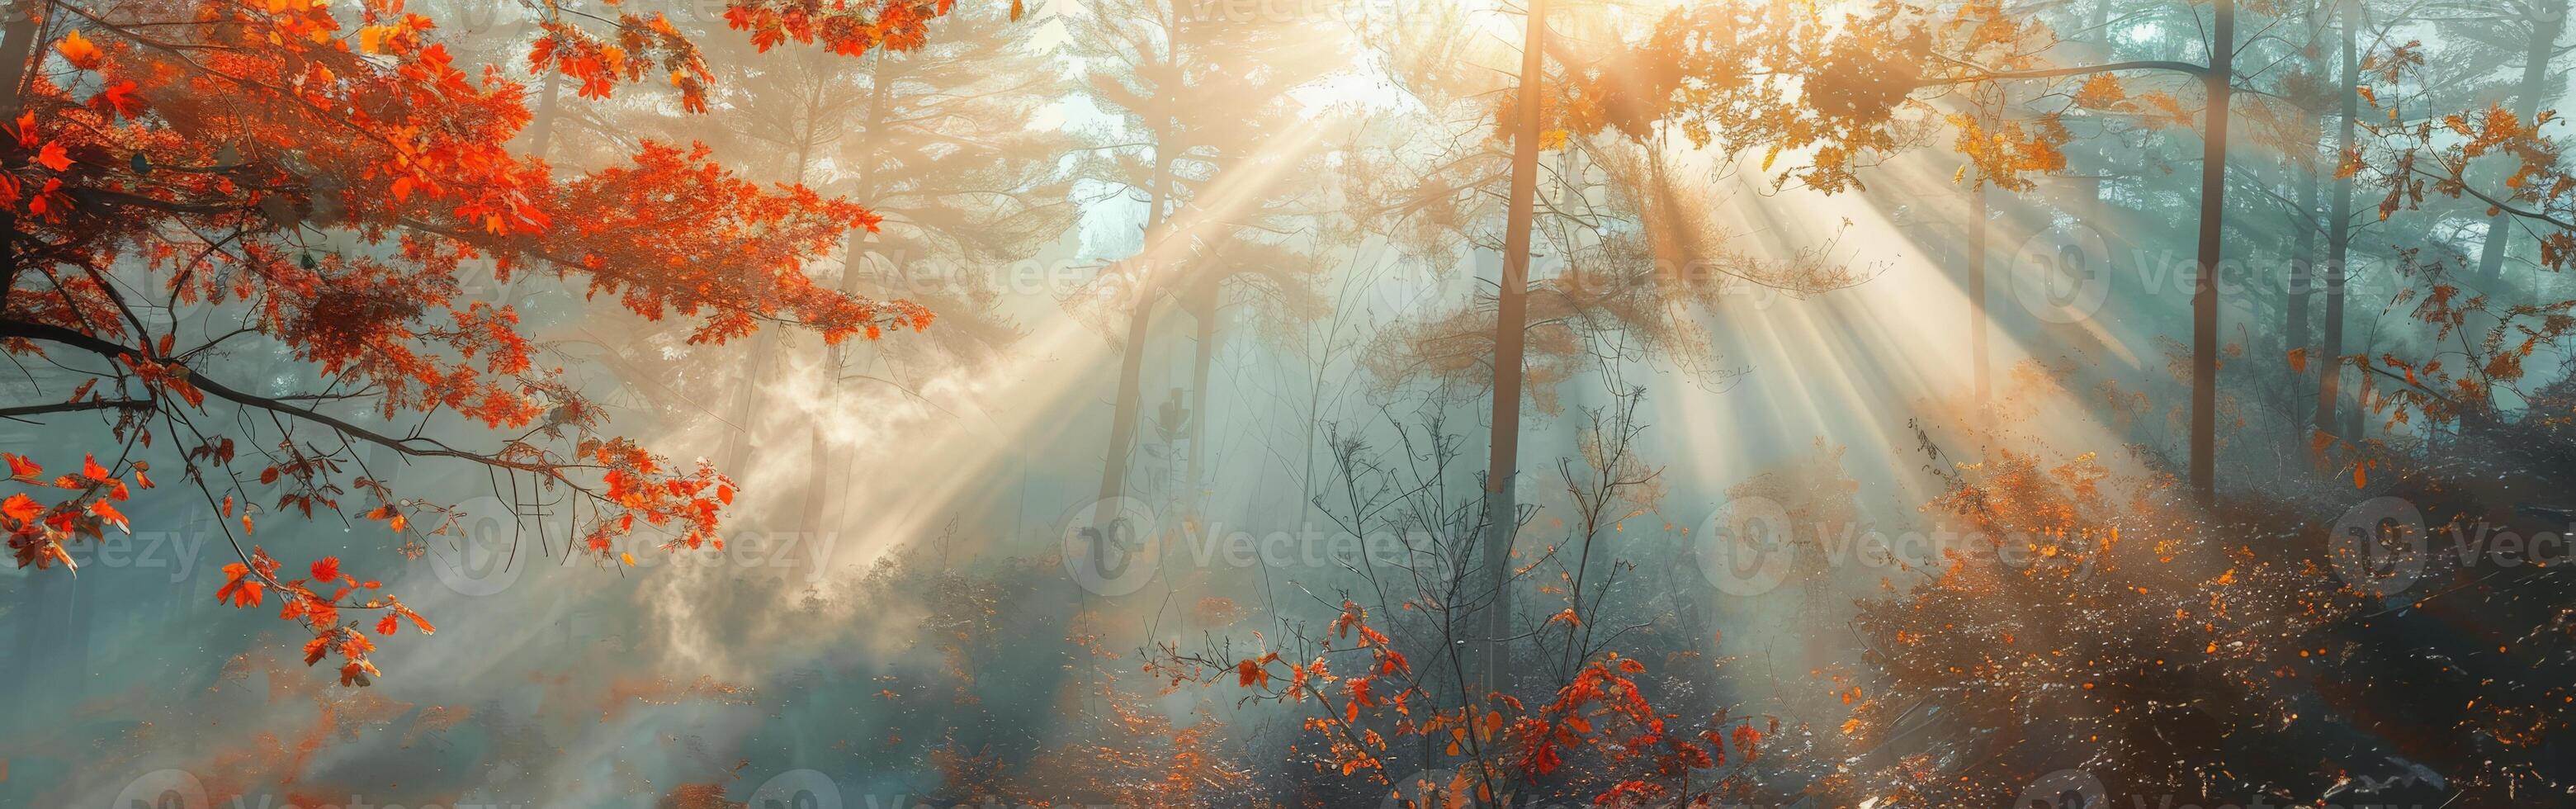 Soleil brille par des arbres dans forêt photo